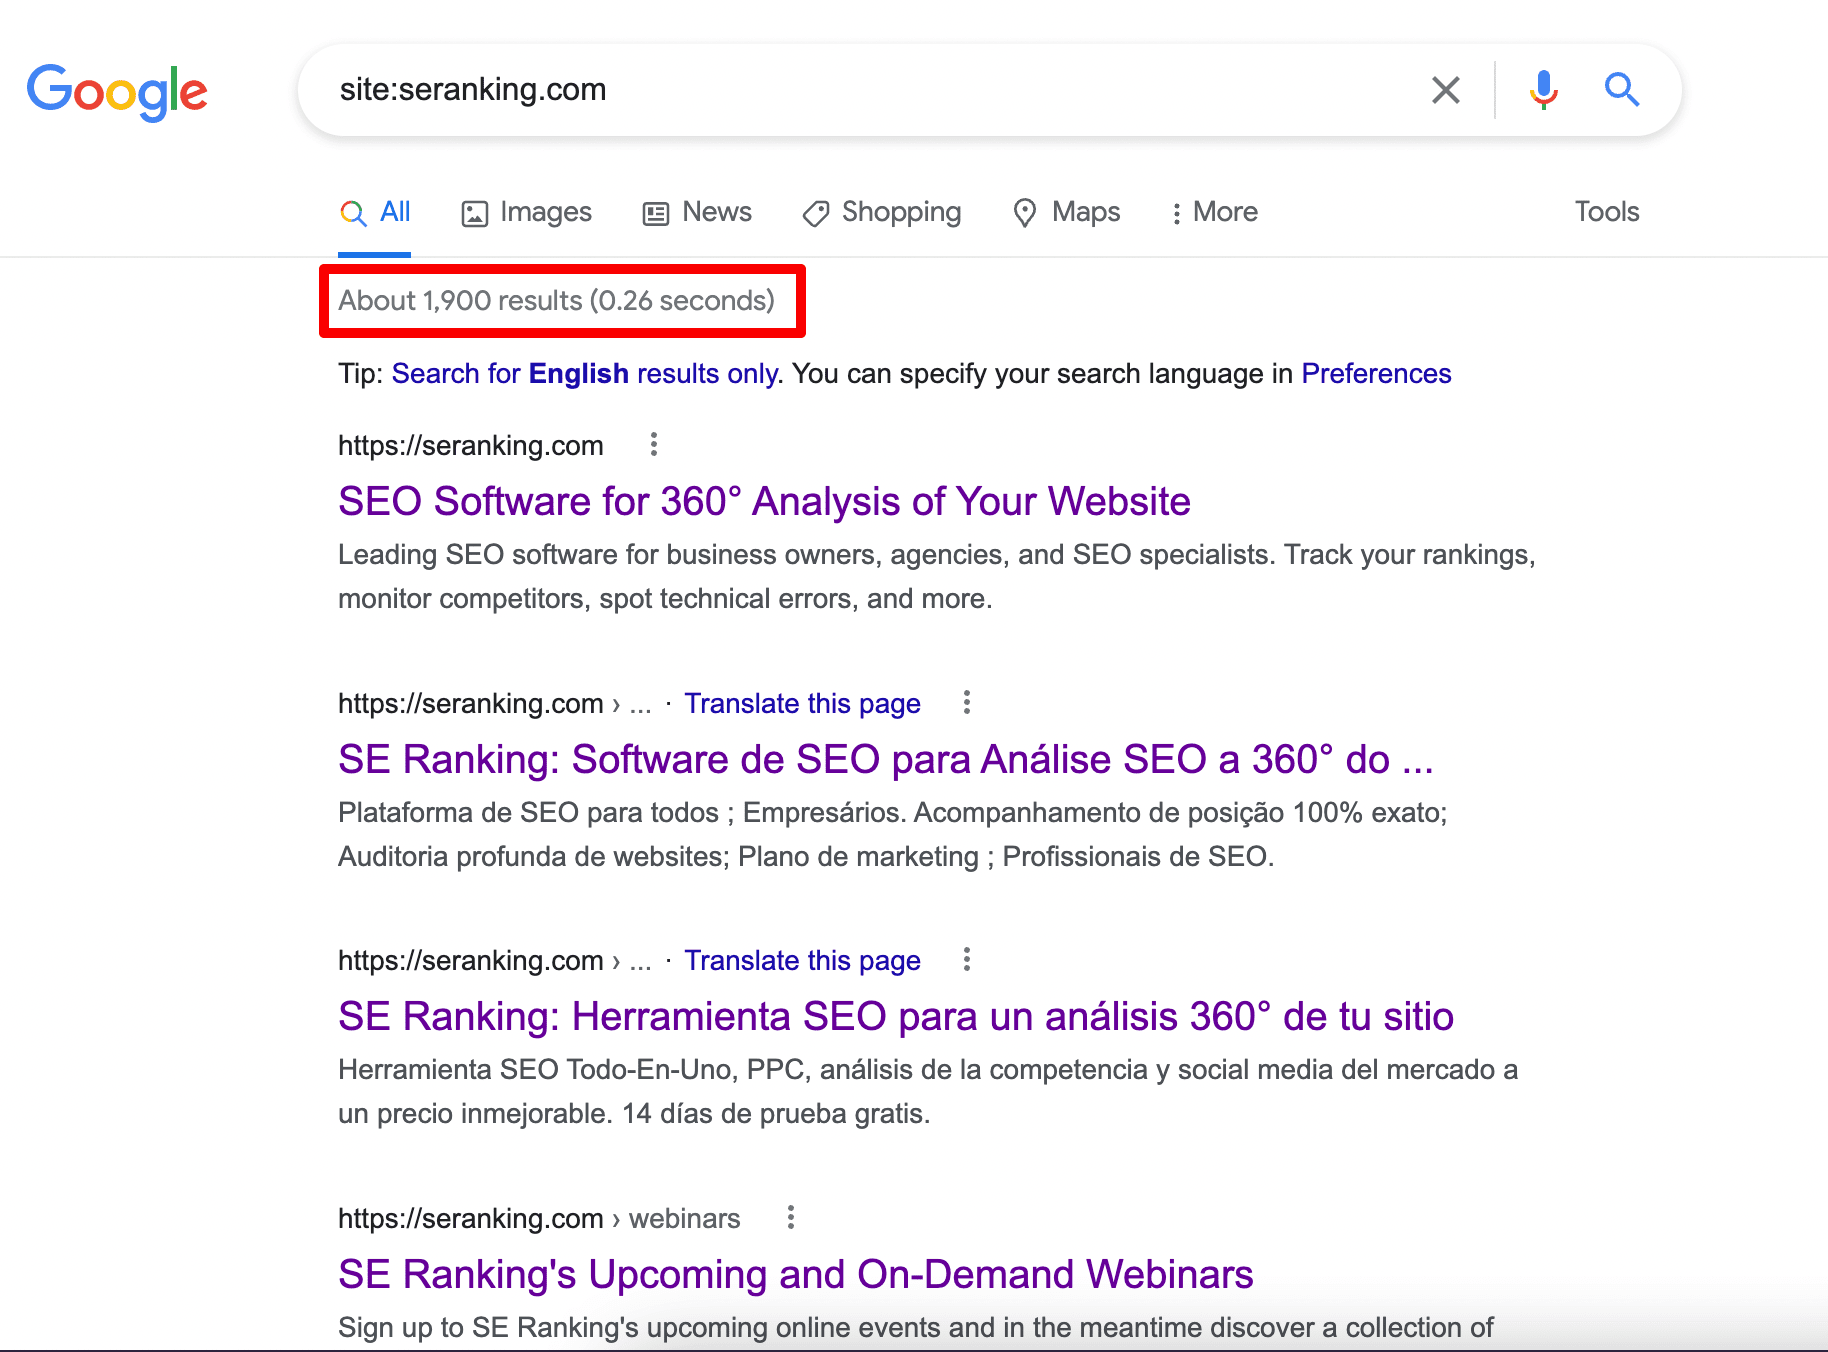 Google’s search operator site: